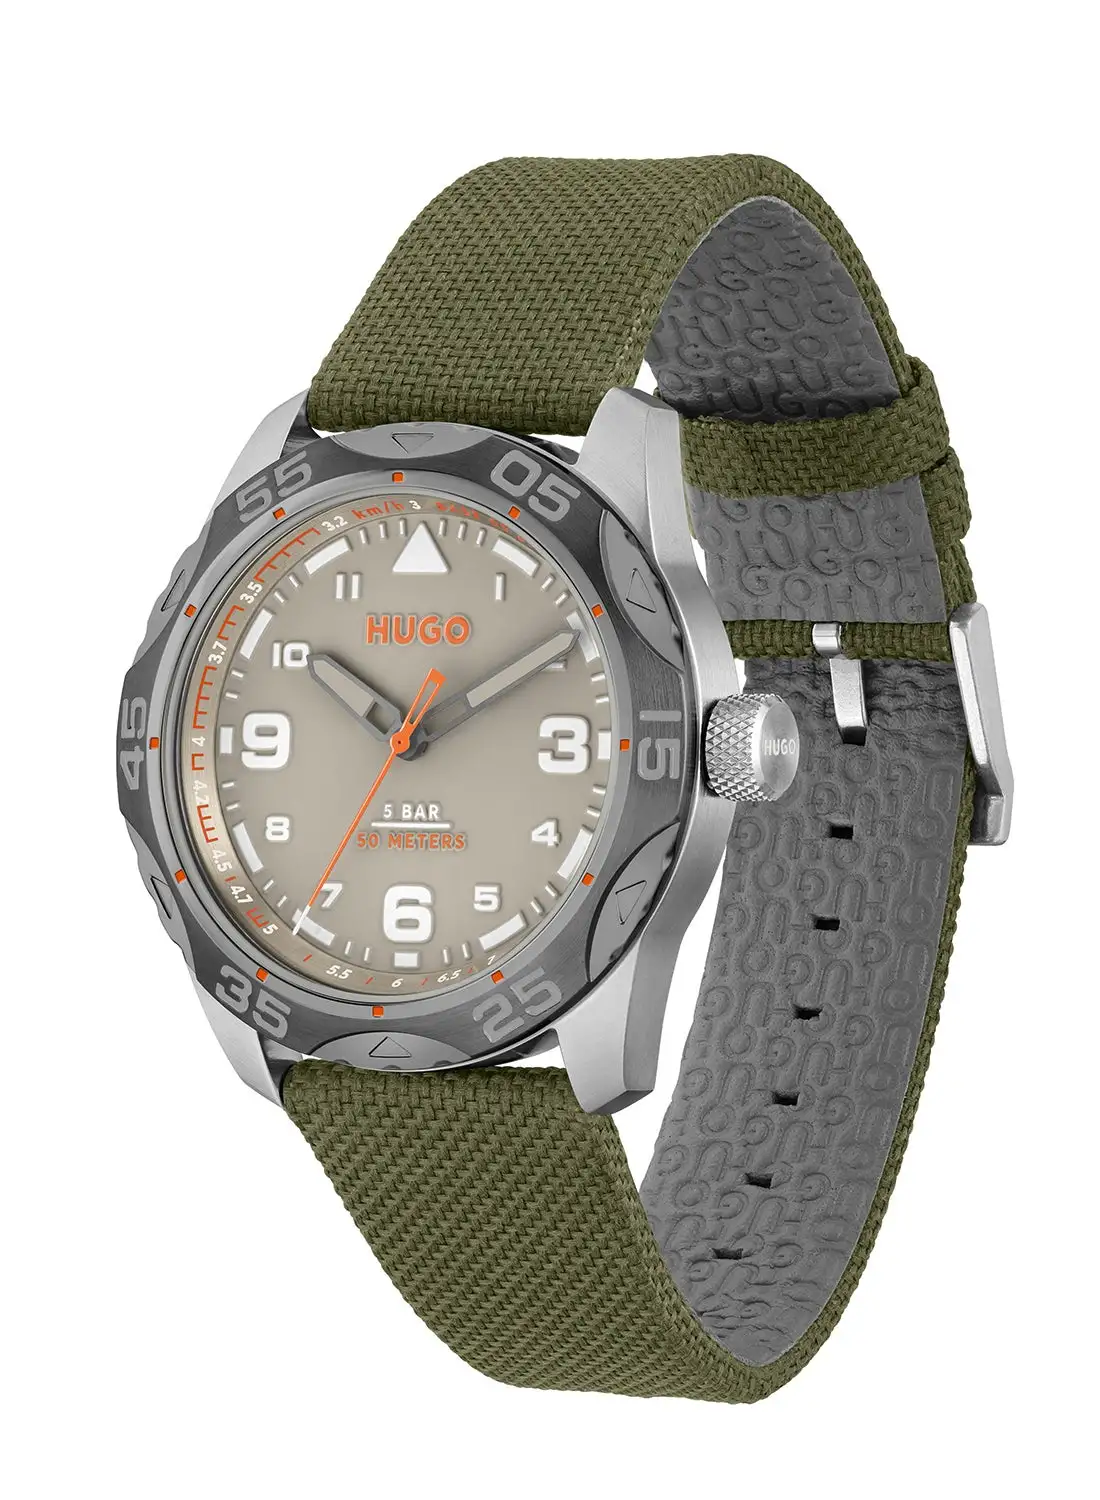 HUGO BOSS Men's Analog Round Shape Nylon Wrist Watch 1530331 - 42 Mm